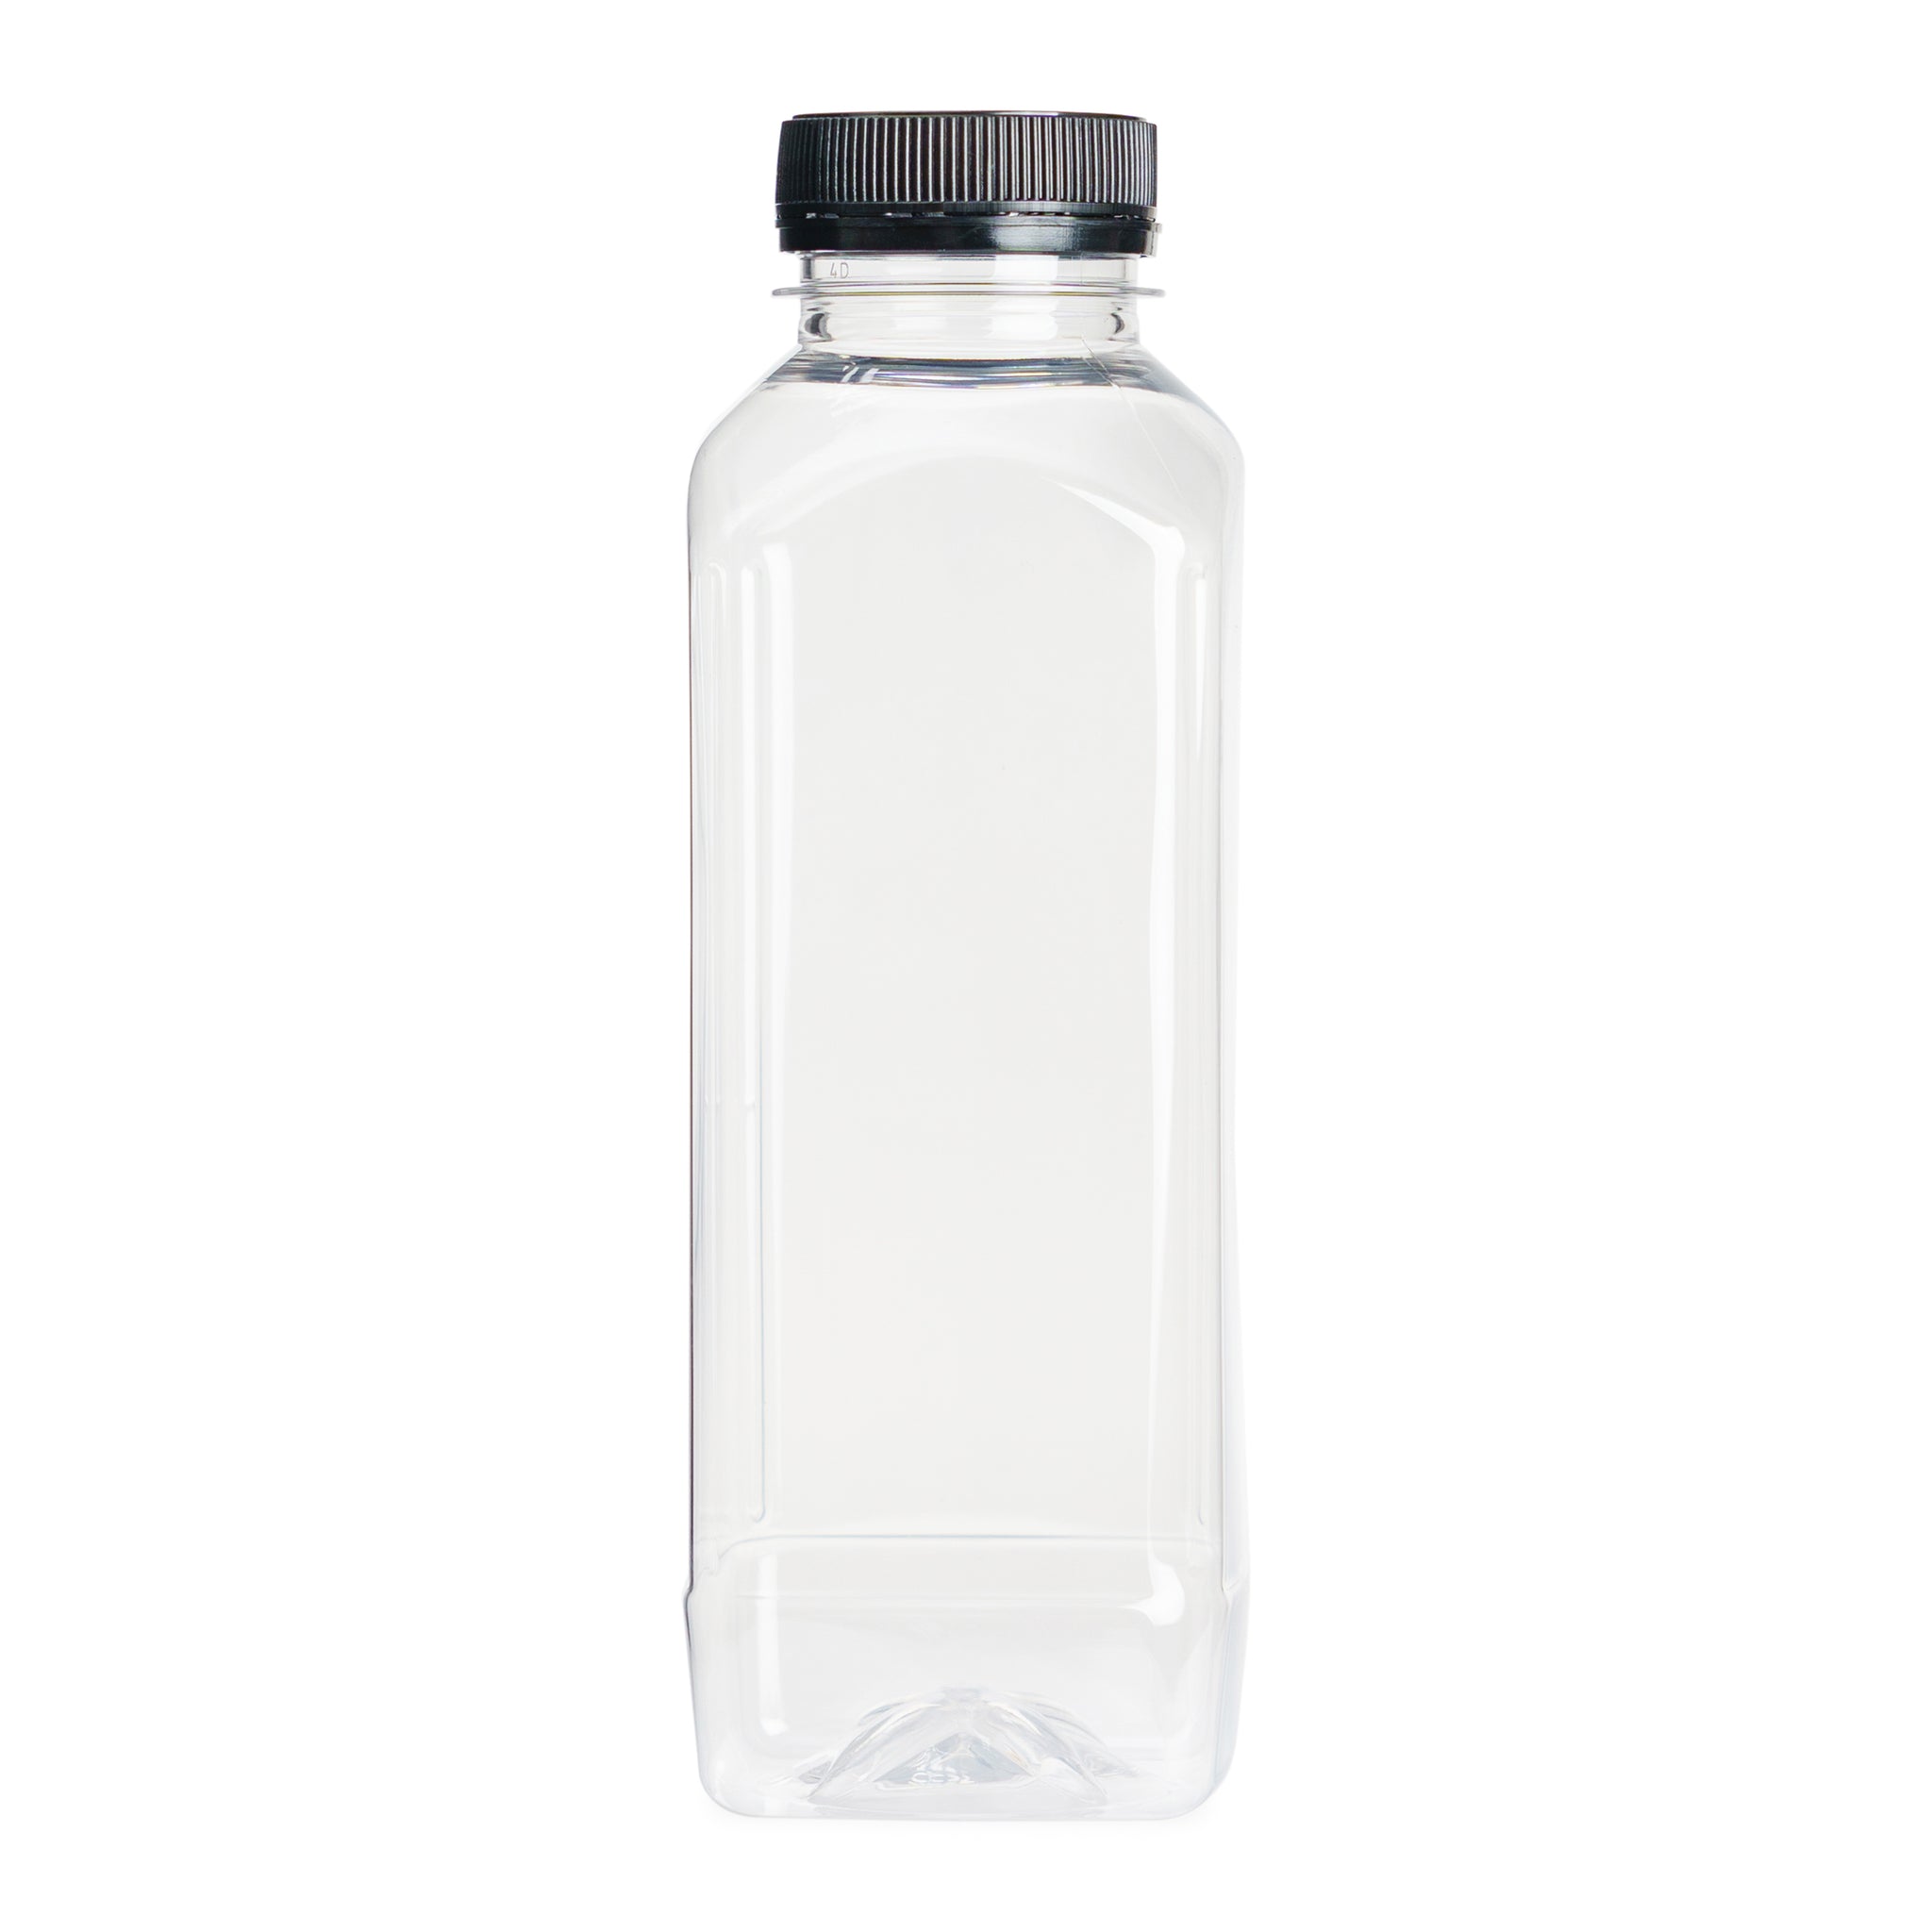 10packs Reusable PET Plastic Juice Bottles with Leak-Proof Lids